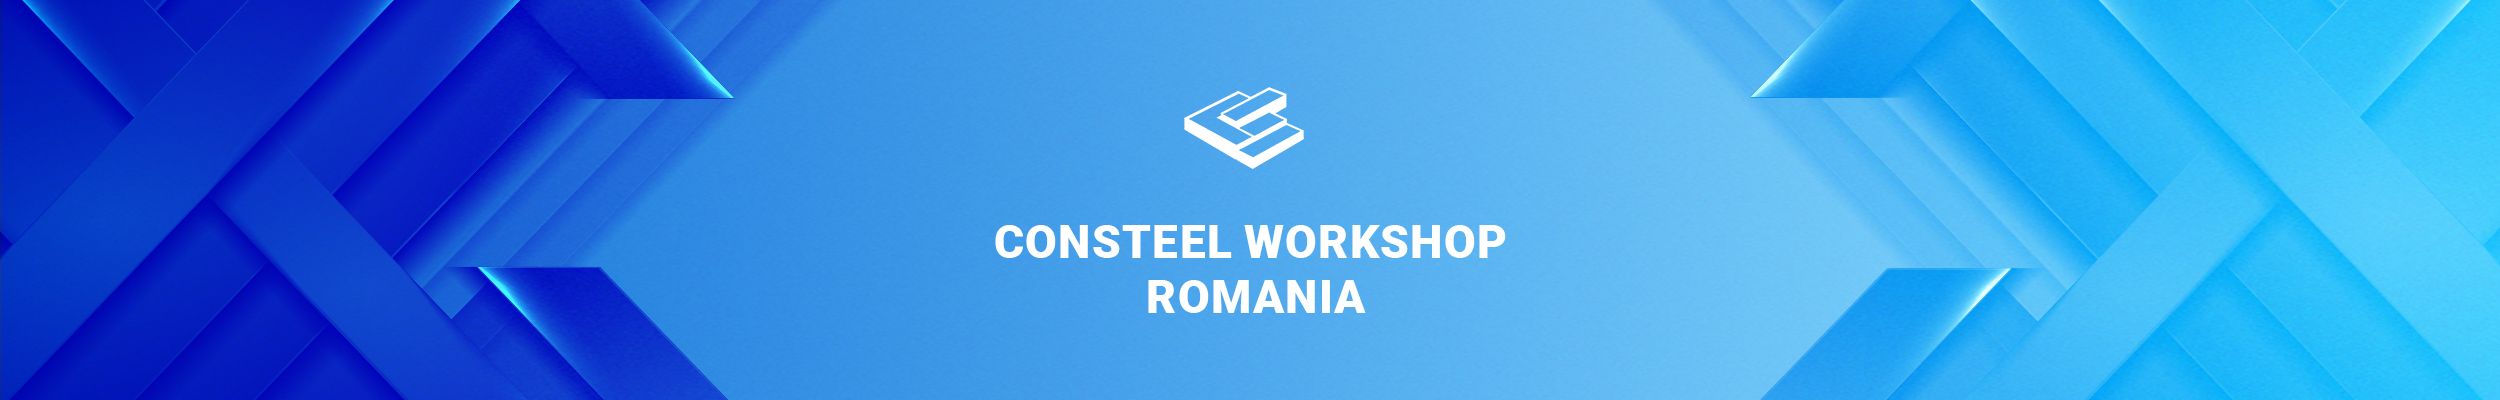 consteel_workshop_romania